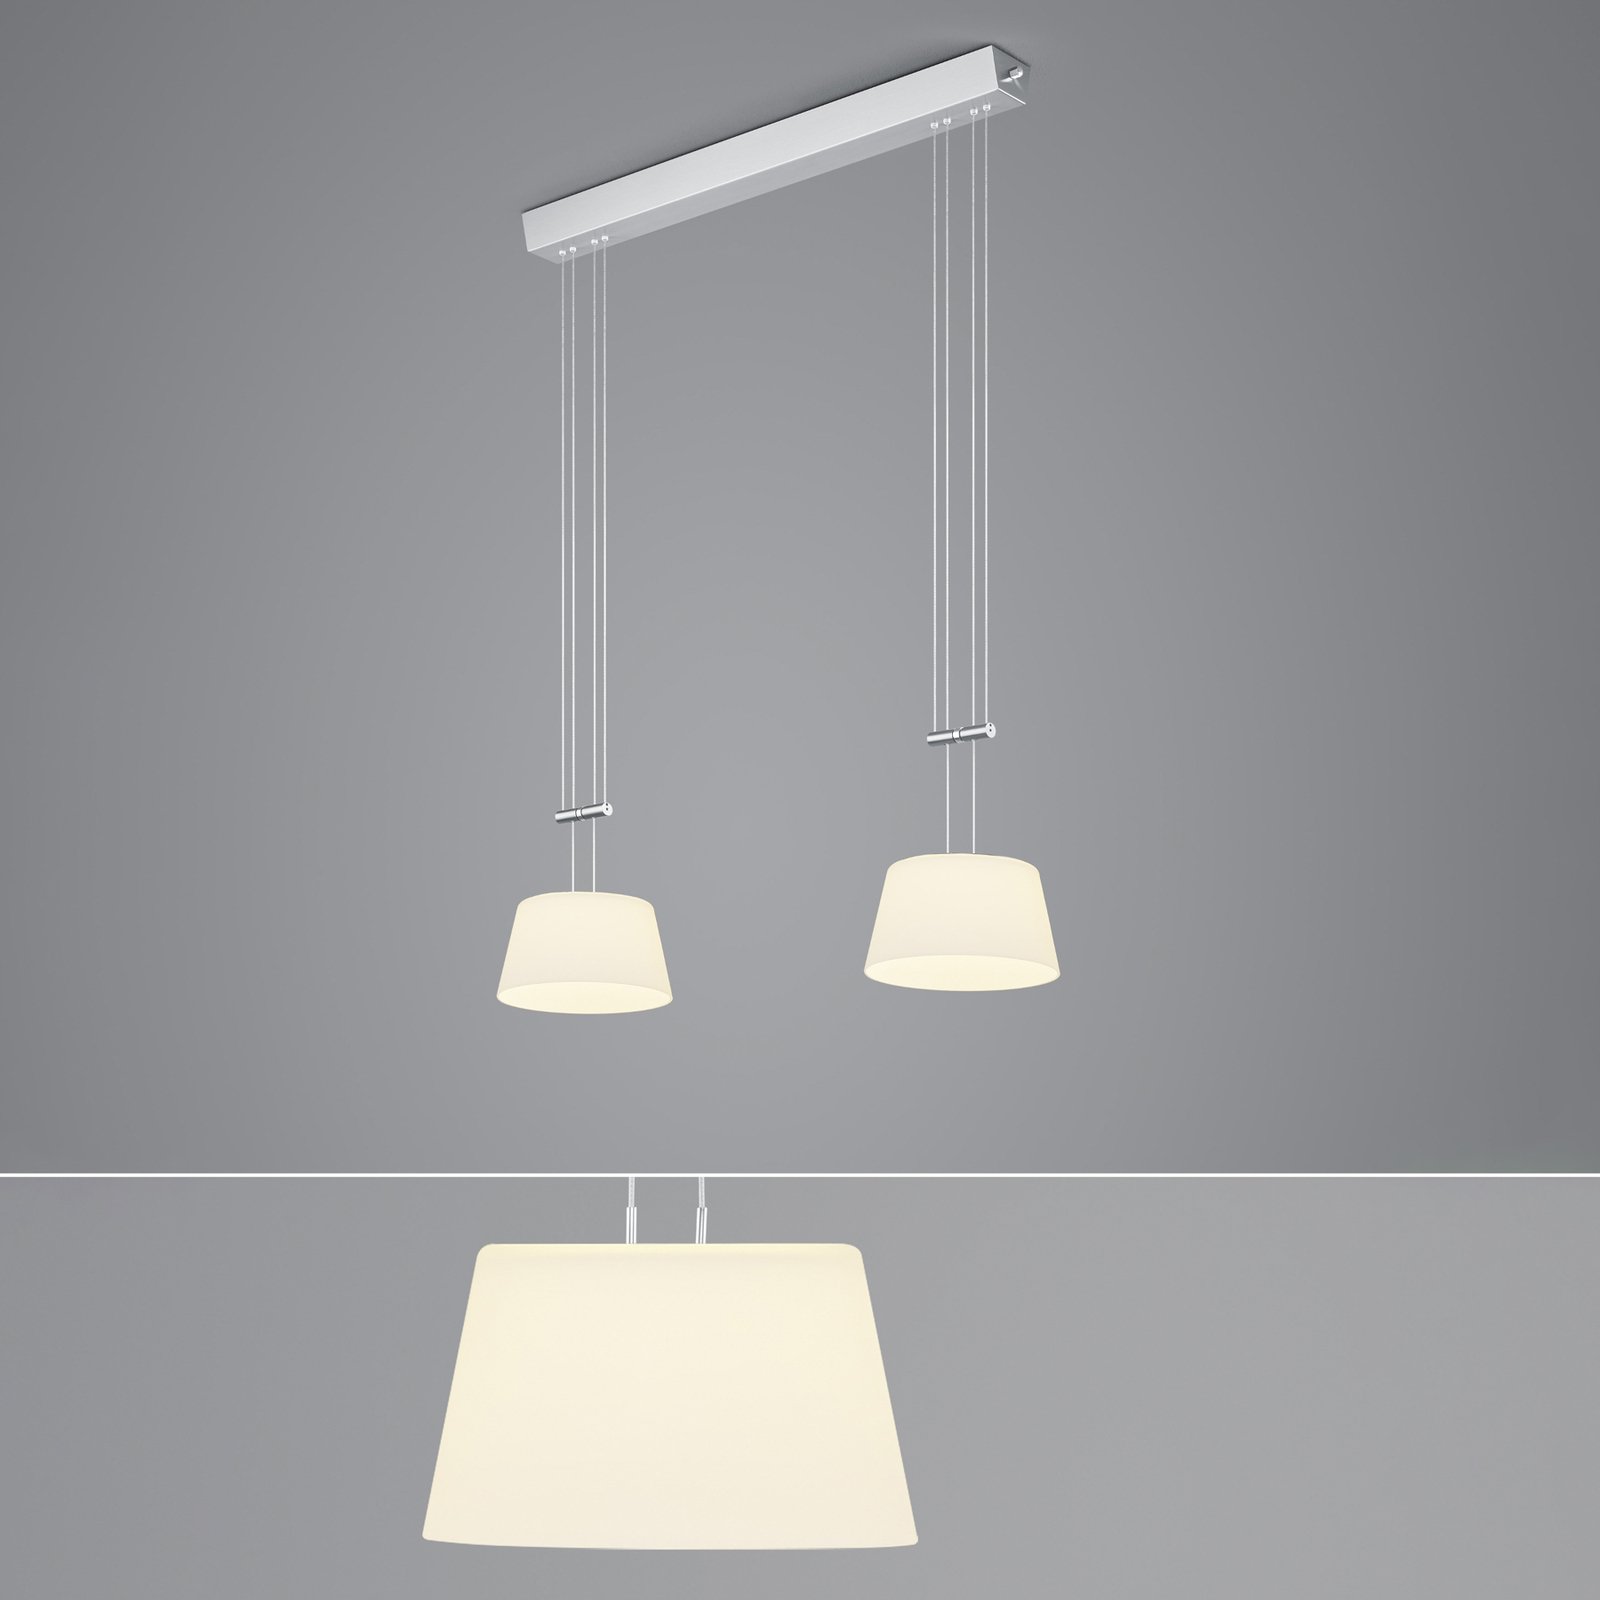 BANKAMP LED hanglamp, 2-lamps, nikkel